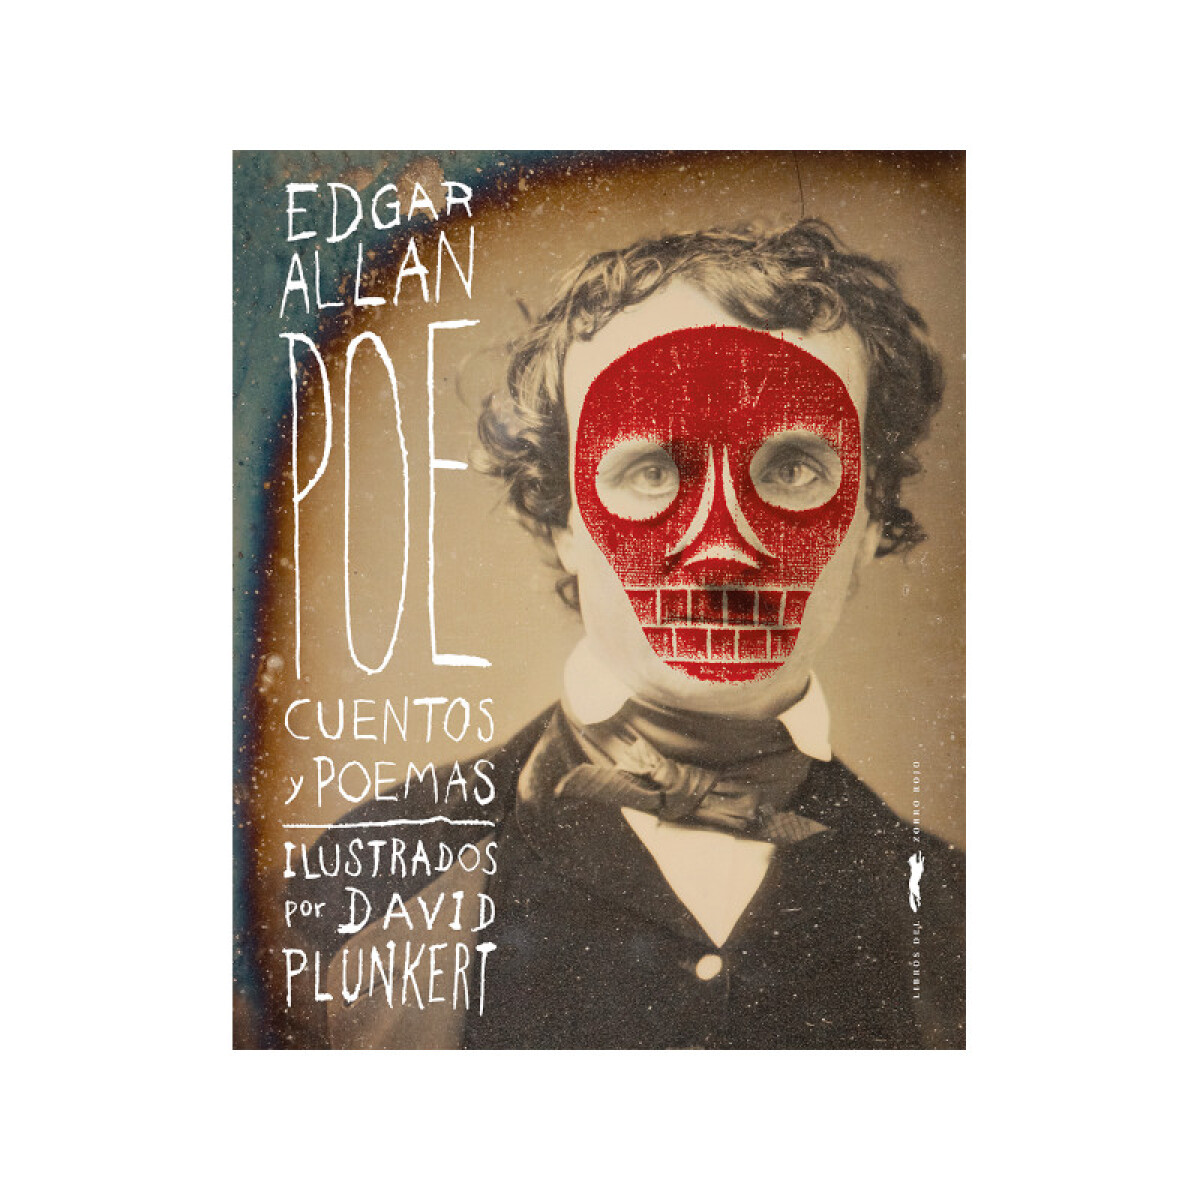 Cuentos y poemas - Edgar Allan Poe 